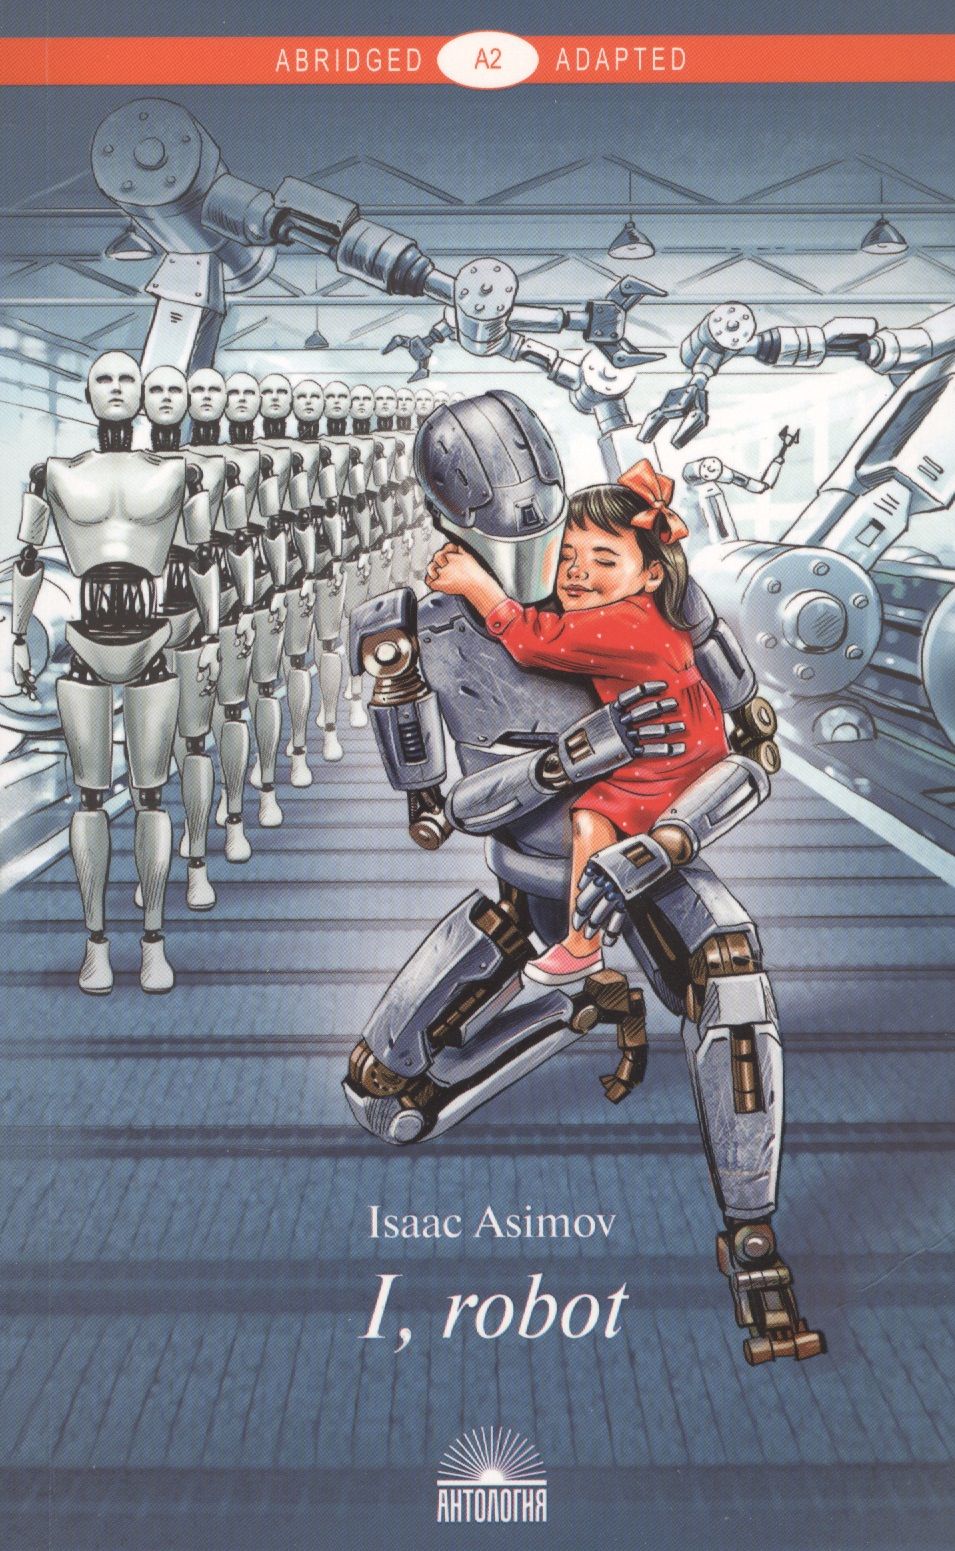 Читать про робота. Айзек Азимов "я, робот". Айзек Азимов book i Robot. Книга Айзека Азимова я робот. Айзек Азимов обложки книги я робот.